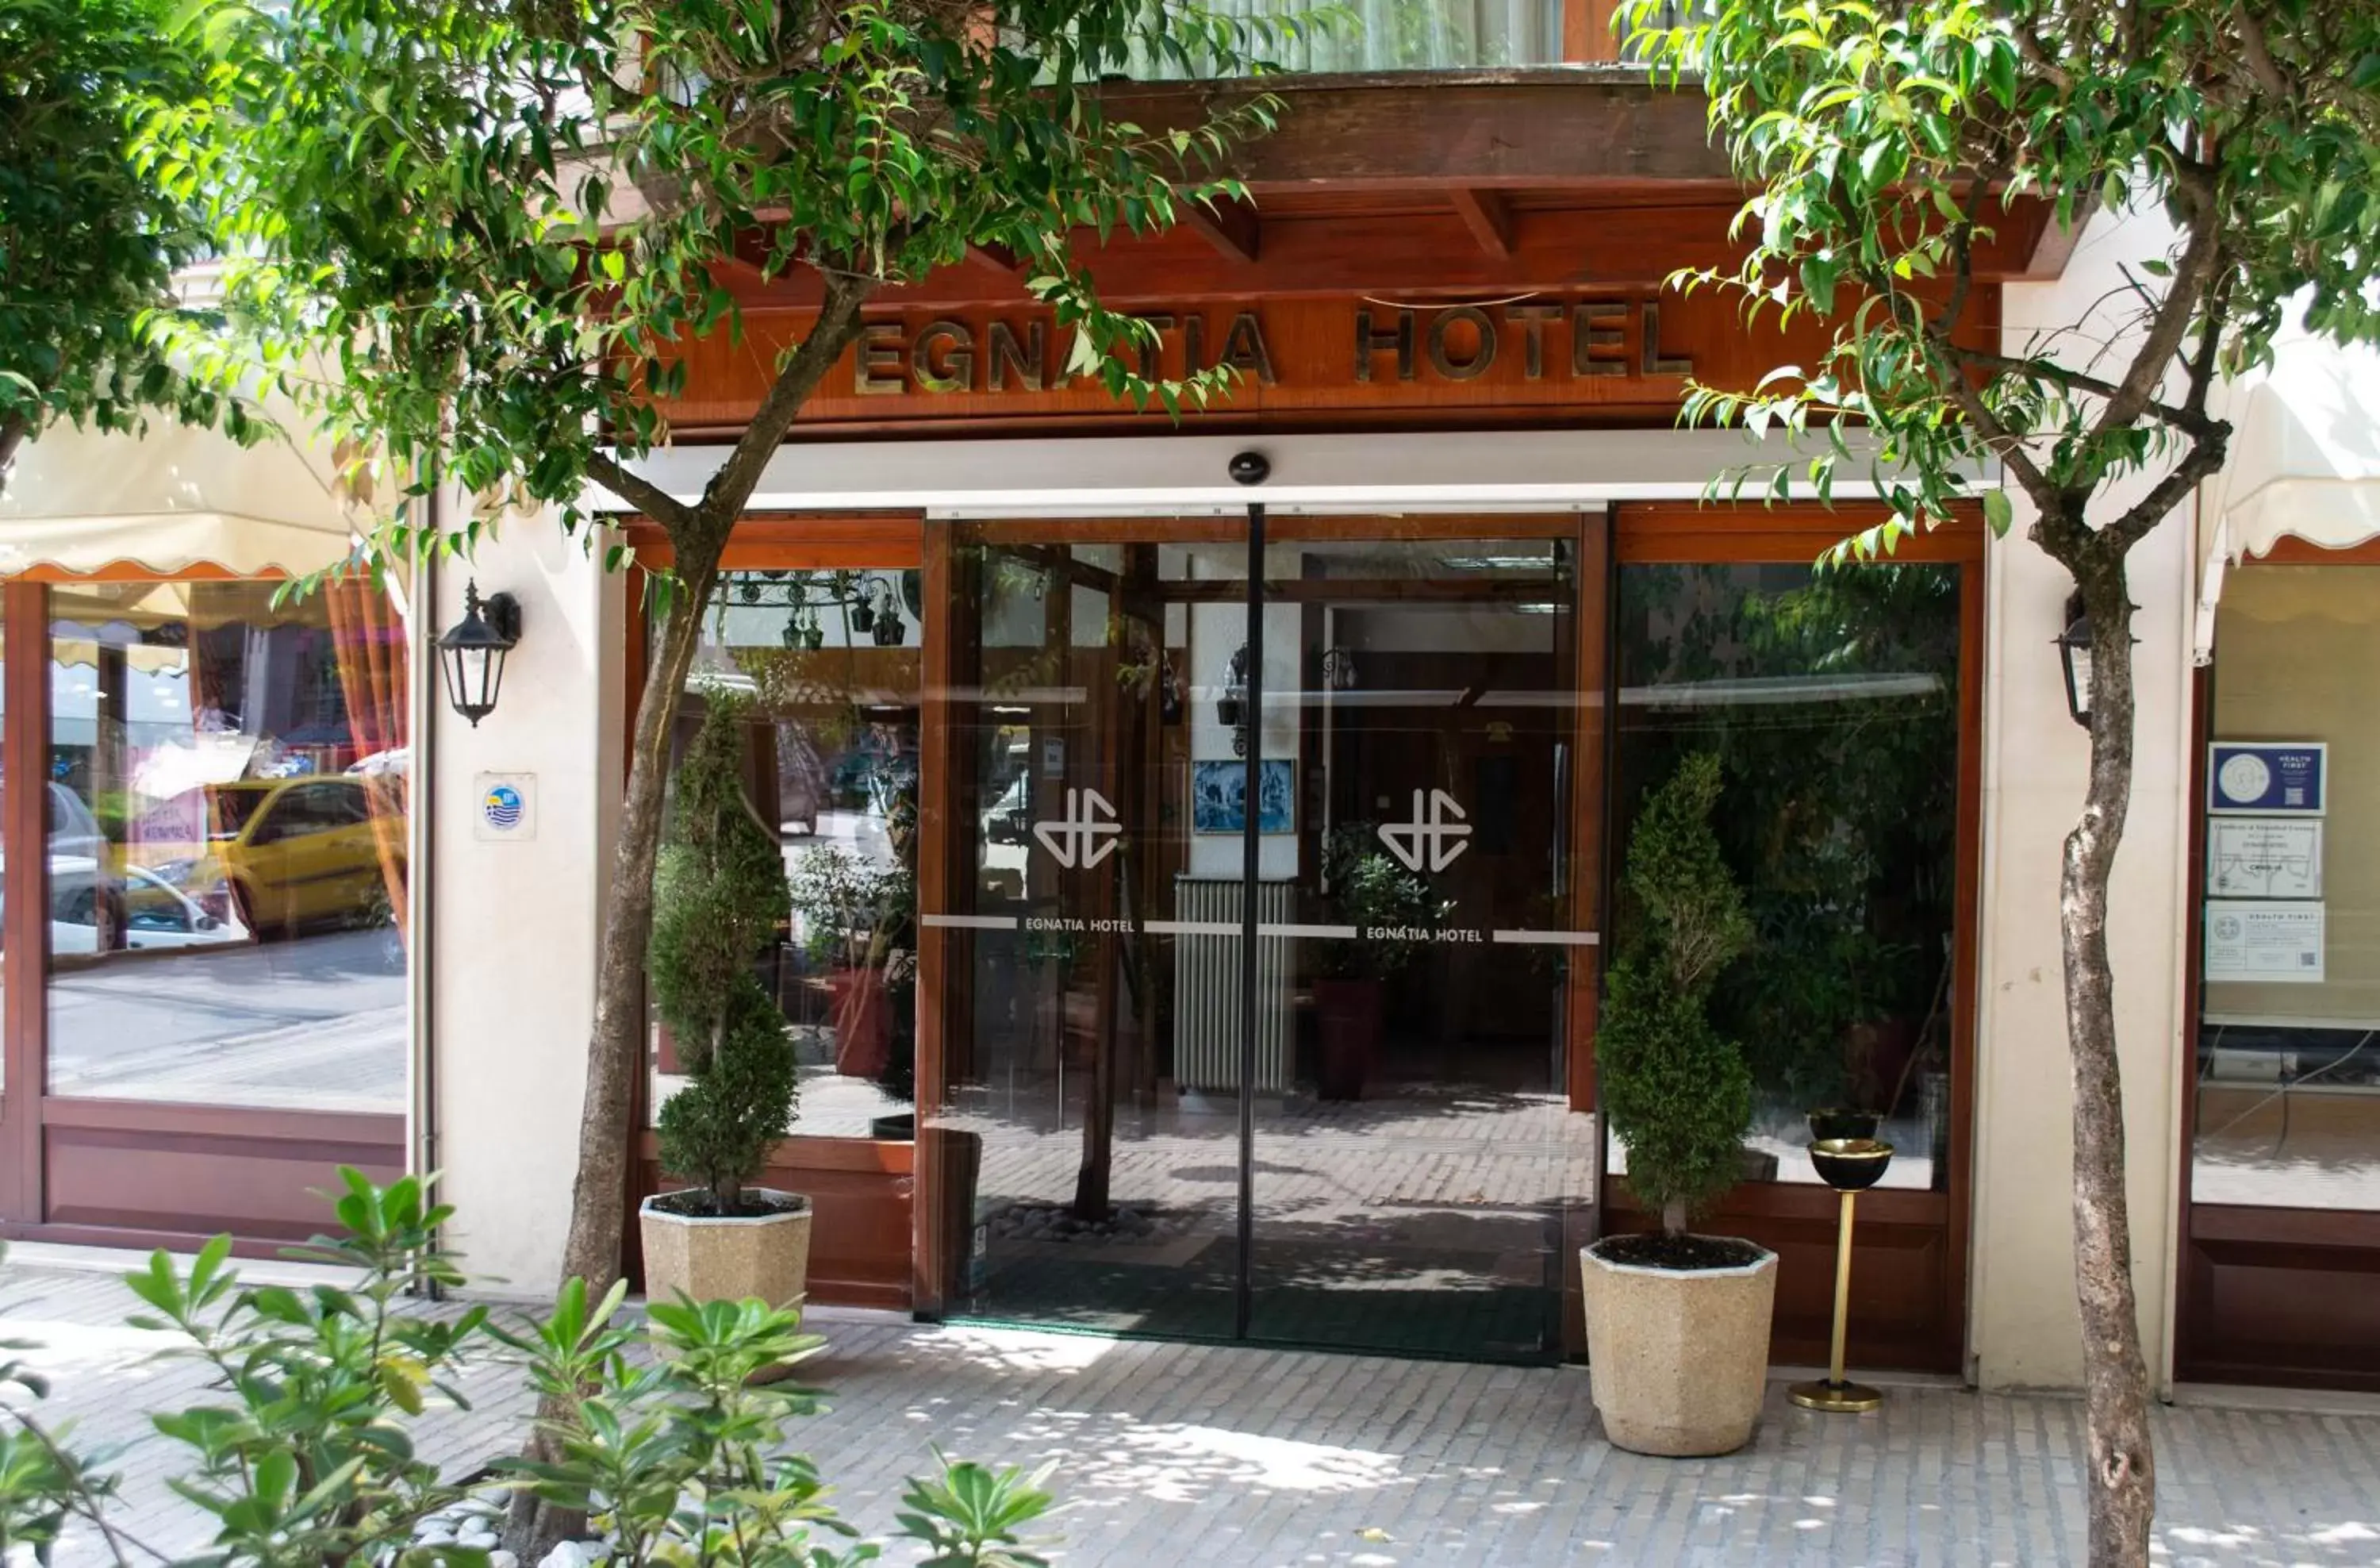 Facade/entrance in Egnatia Hotel